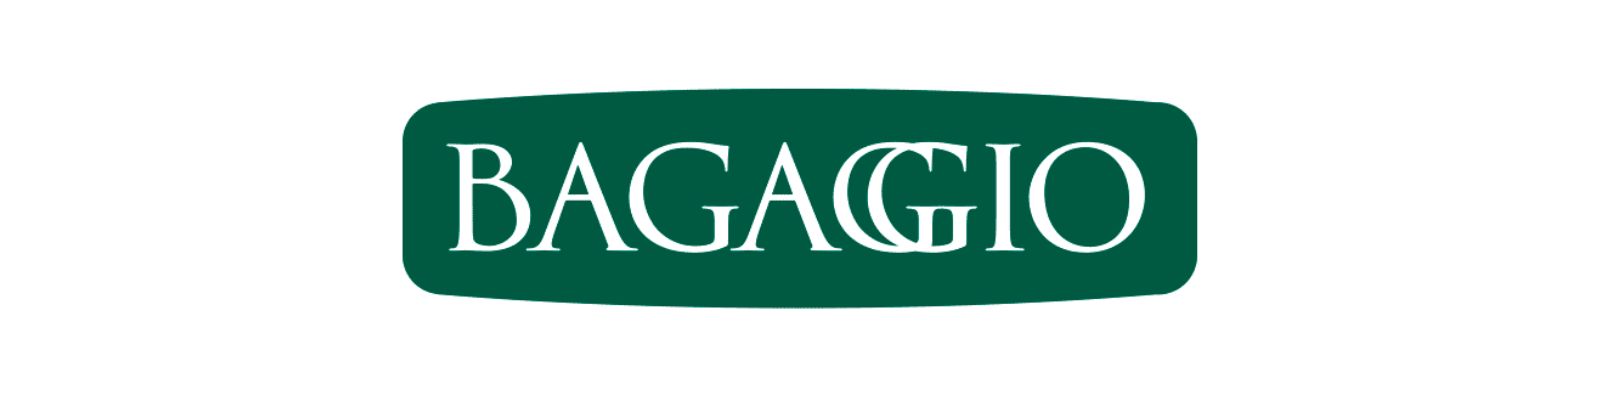 Bagaggio é confiável? Compre com segurança ainda hoje!